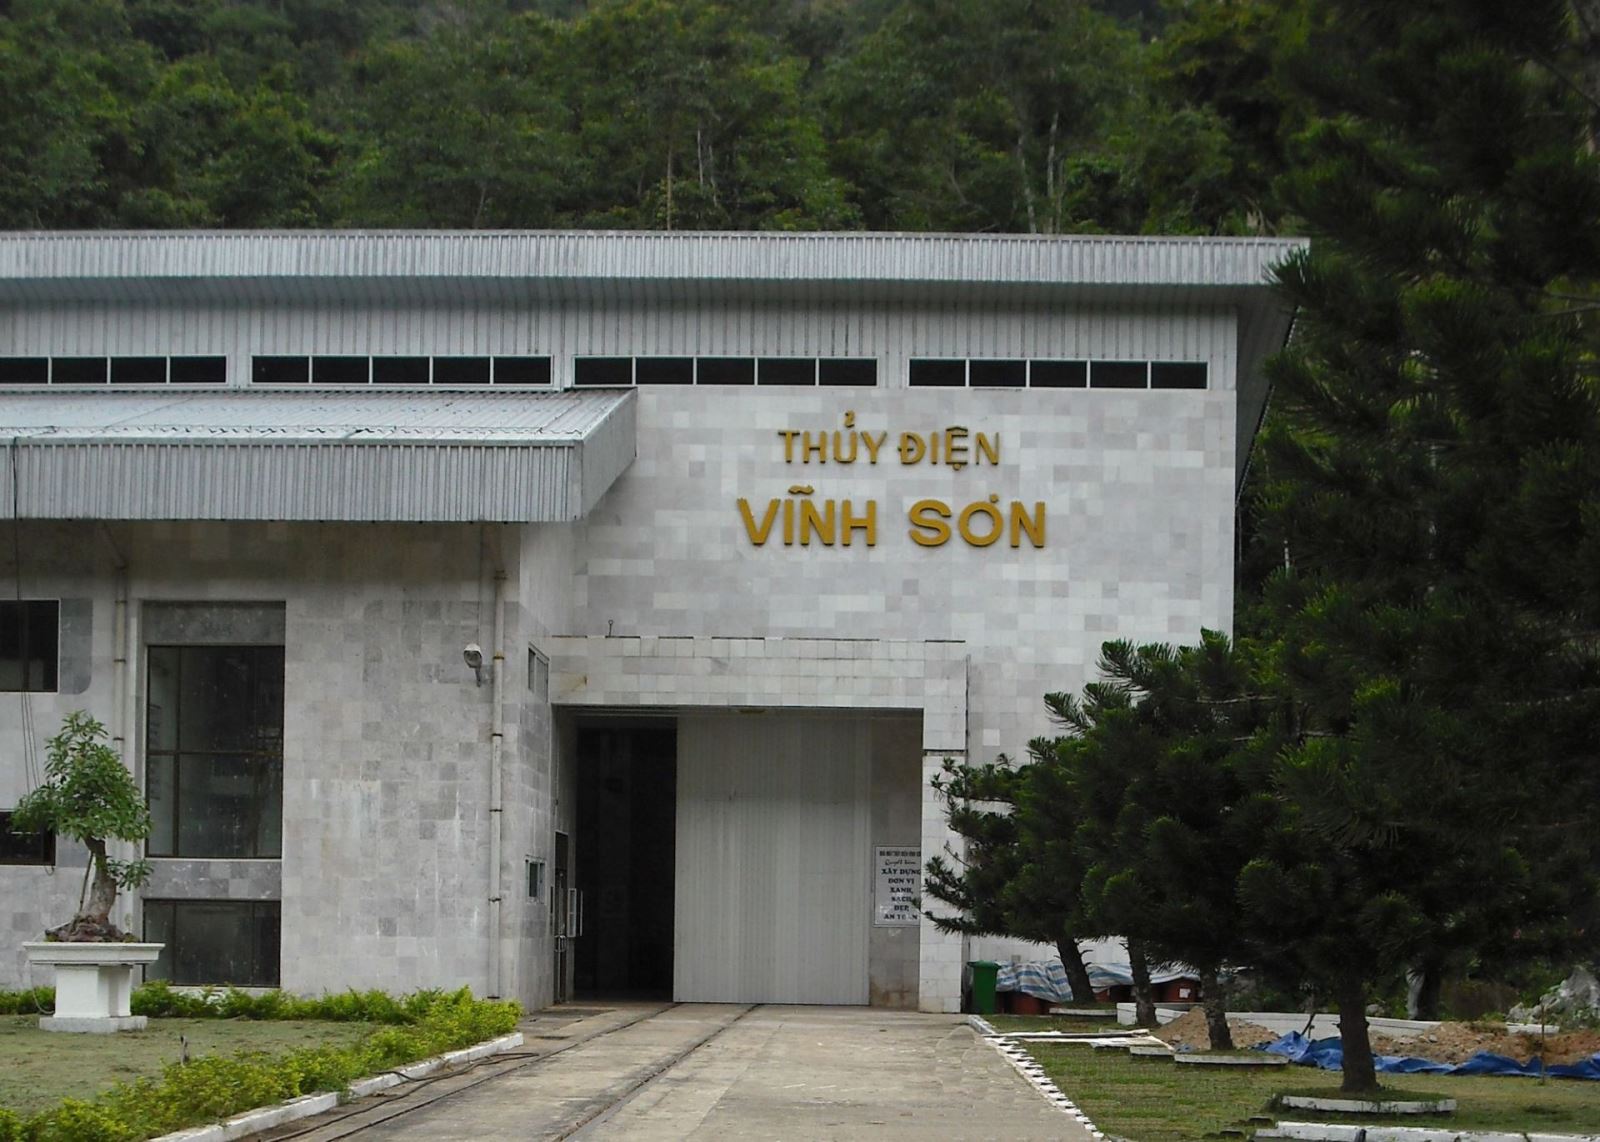 VHS: Kỳ tài chính buồn của Thủy điện Vĩnh Sơn - Sông Hinh